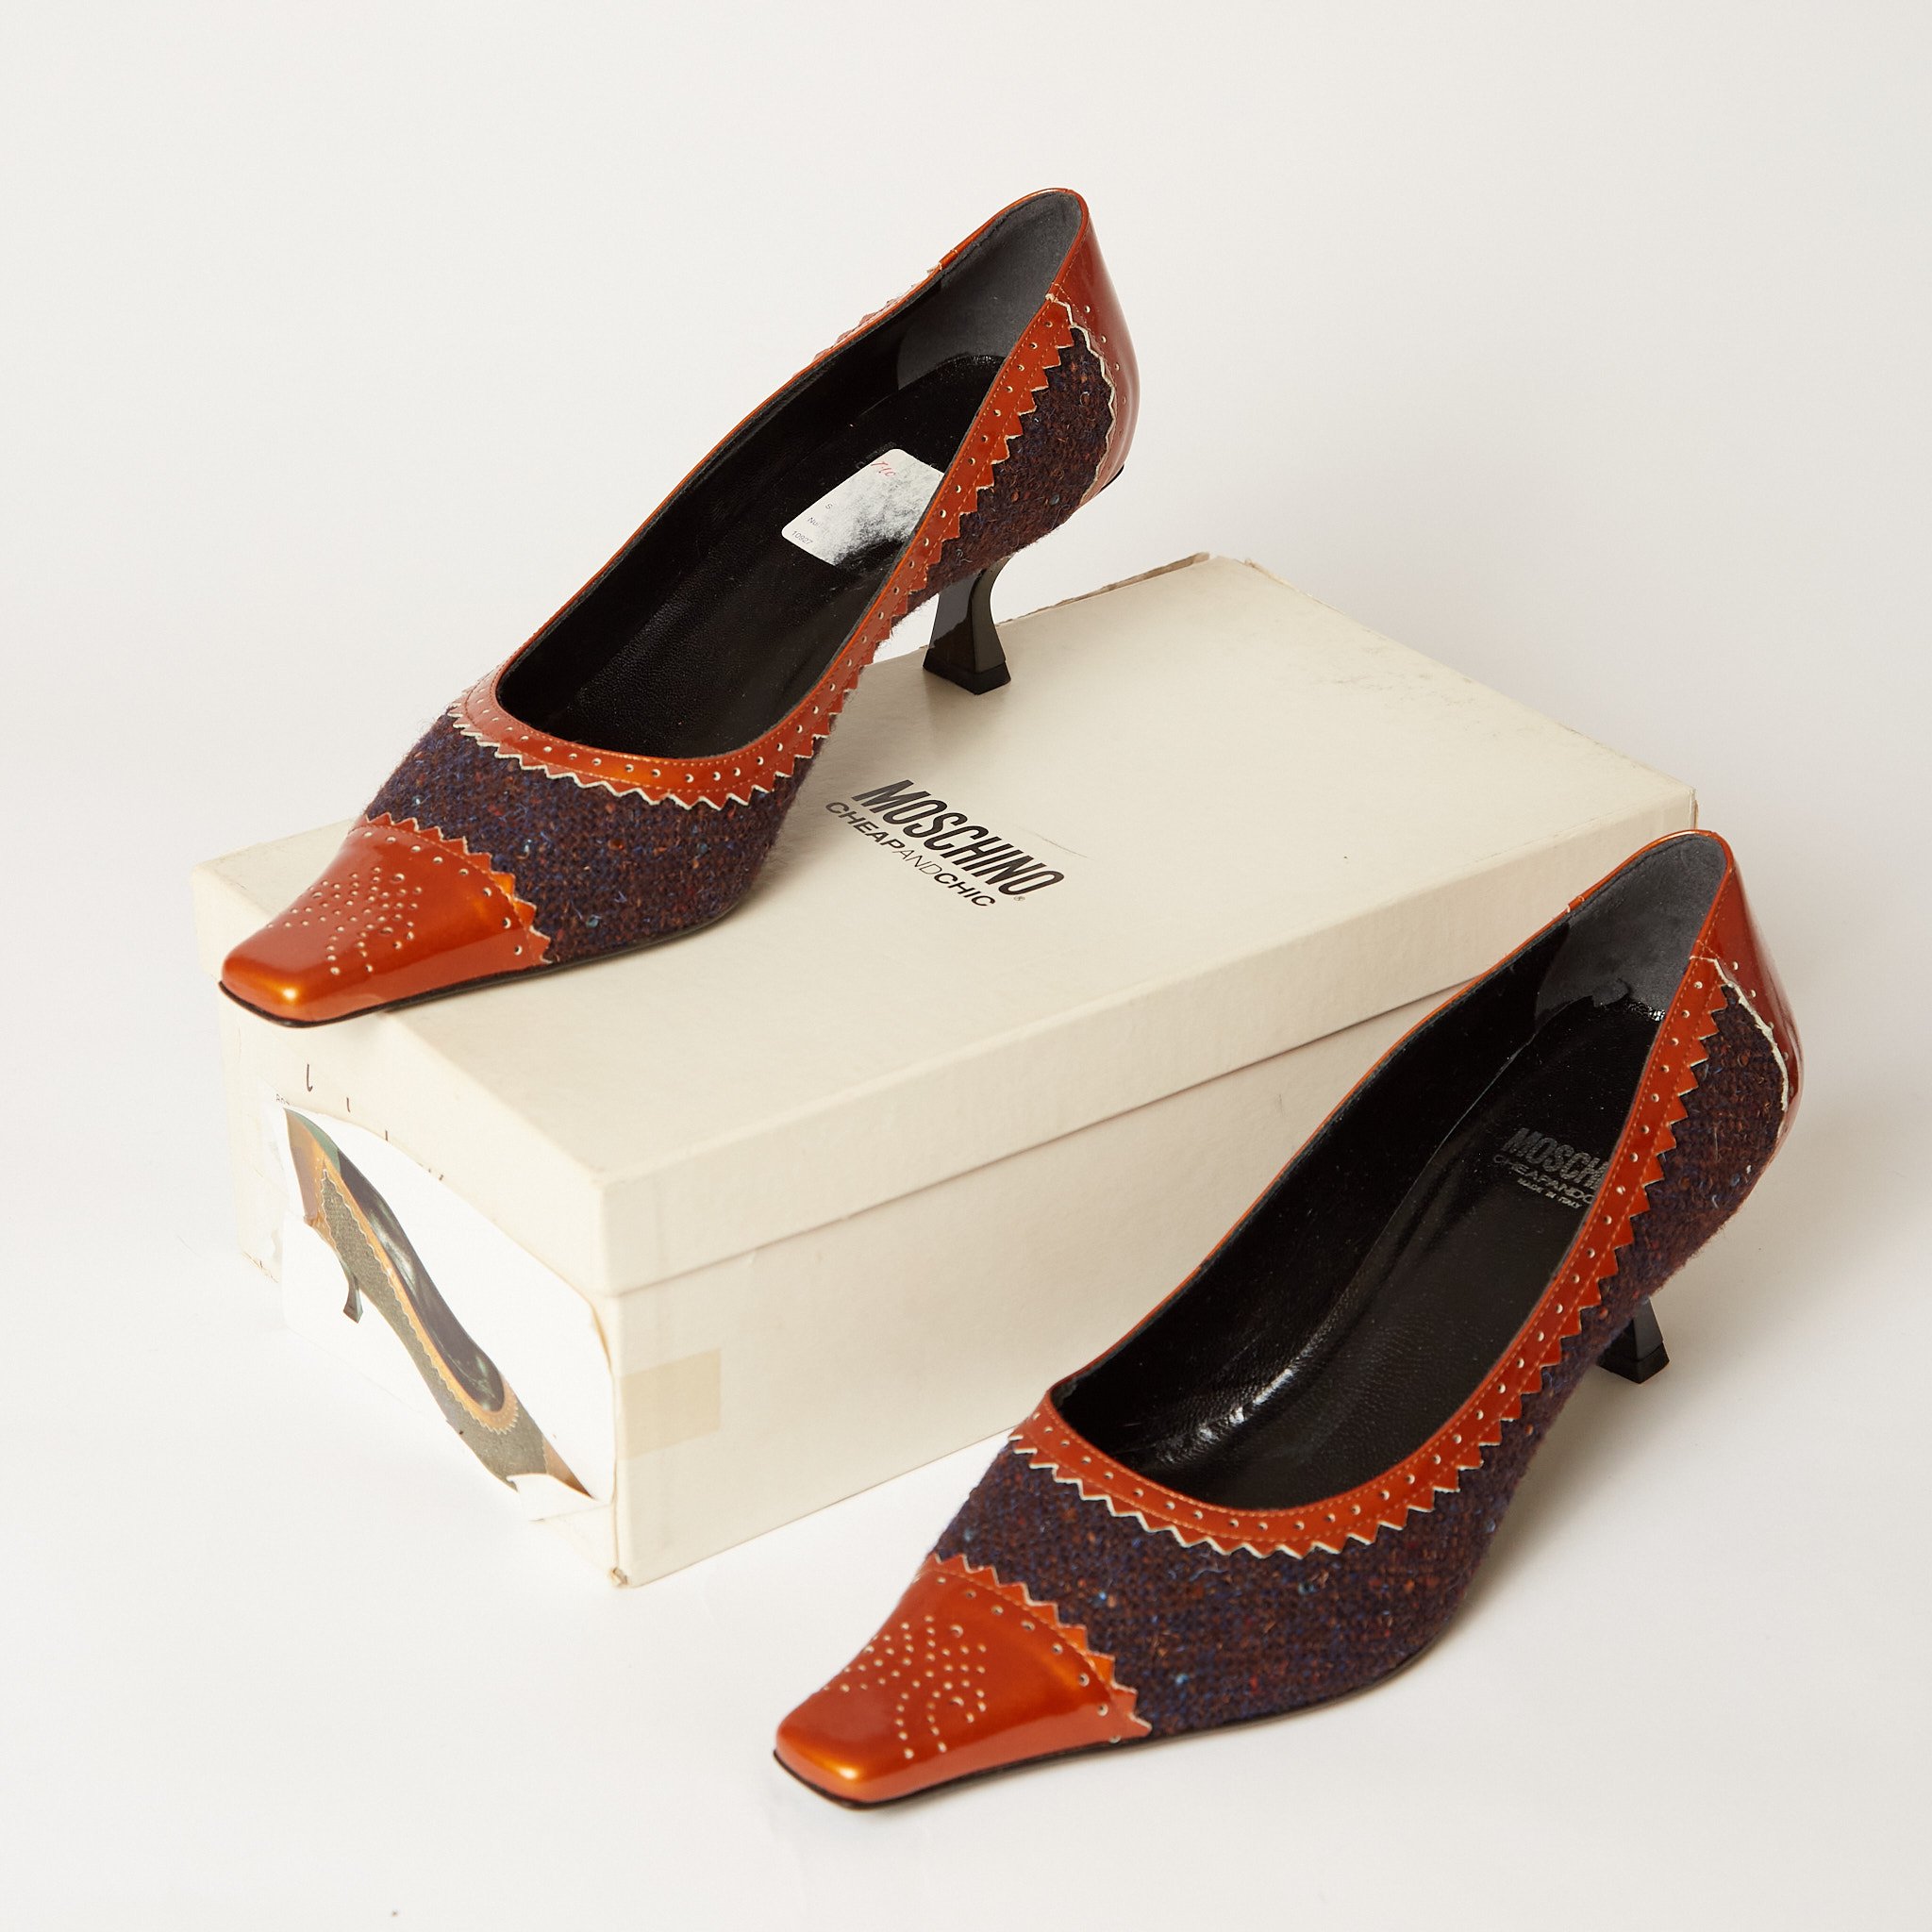 BCBG Girls Womans Heels Orange Strappy Wooden Sandals Sz 7.5 4.5” Heel |  eBay